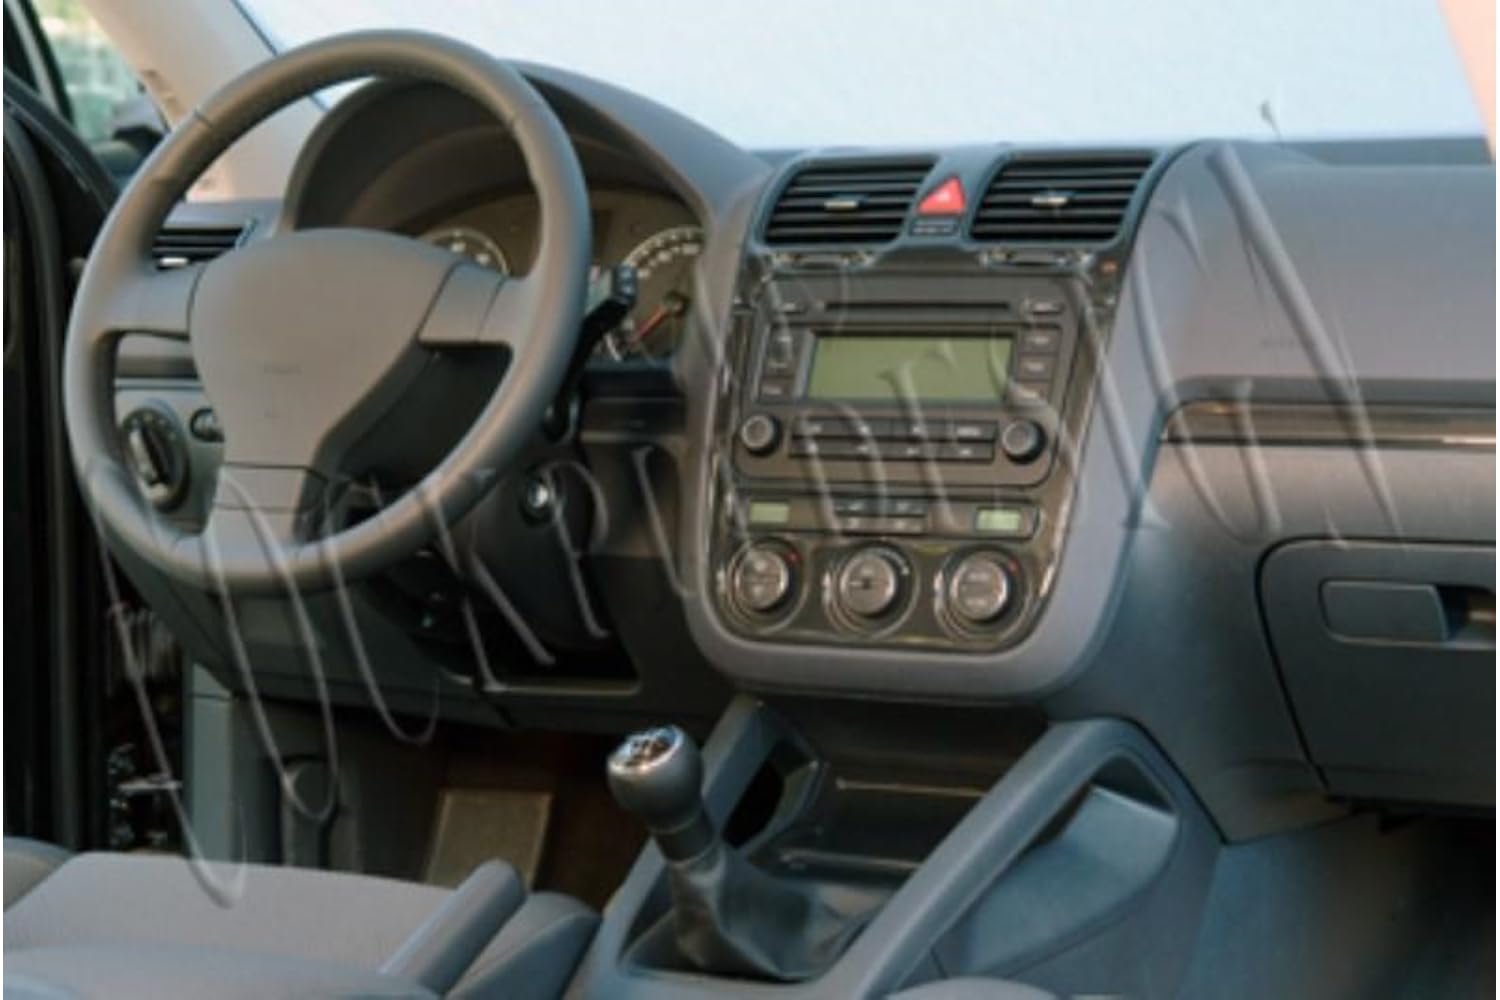 AUTOKLEIDUNG® Cockpit Dekor kompatibel mit Volkswagen Golf V Plus ab Baujahr 12/2004 16 Teile | 3D Walnuss Optik von Autokleidung